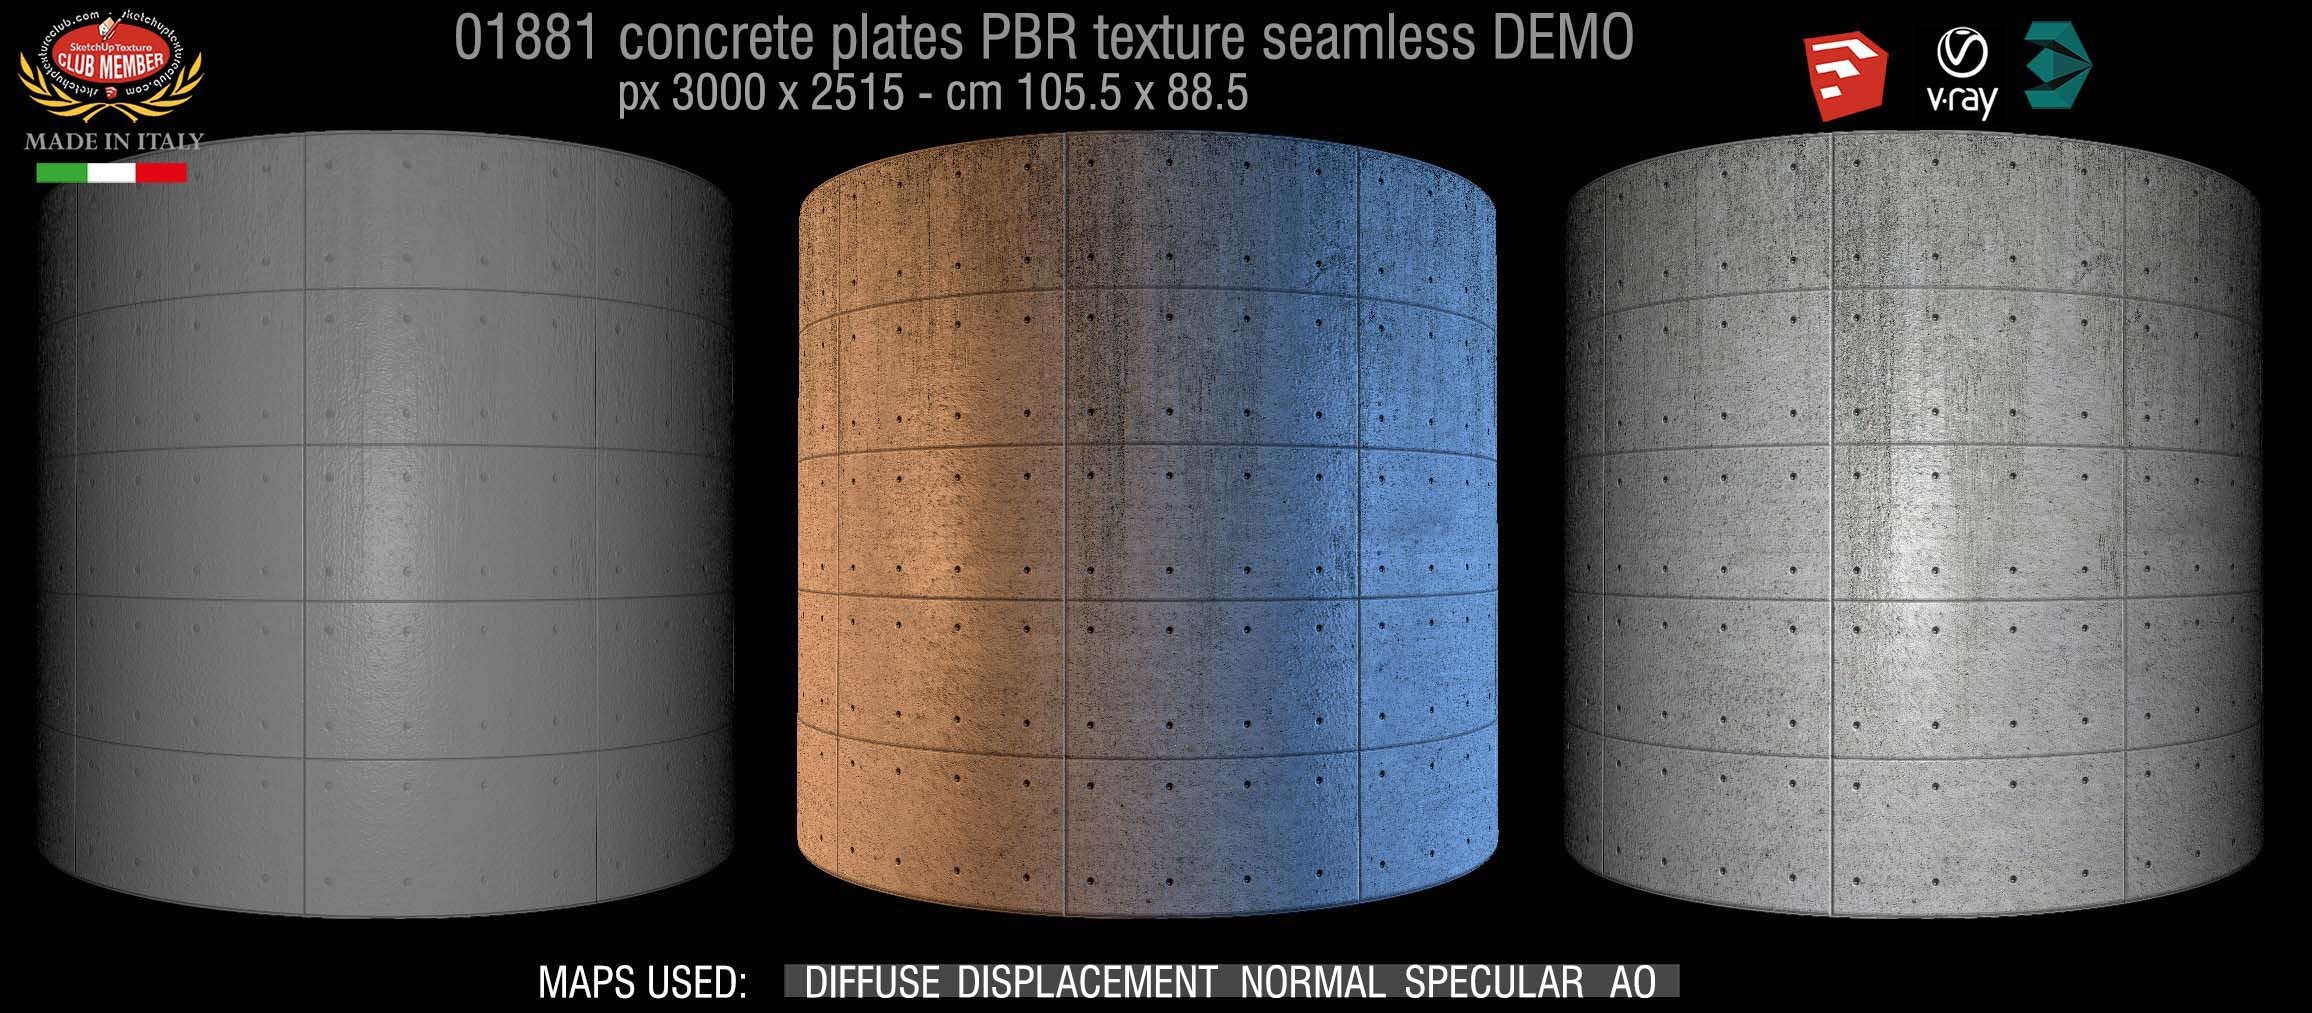 01881 tadao ando concrete plates PBR texture seamless DEMO